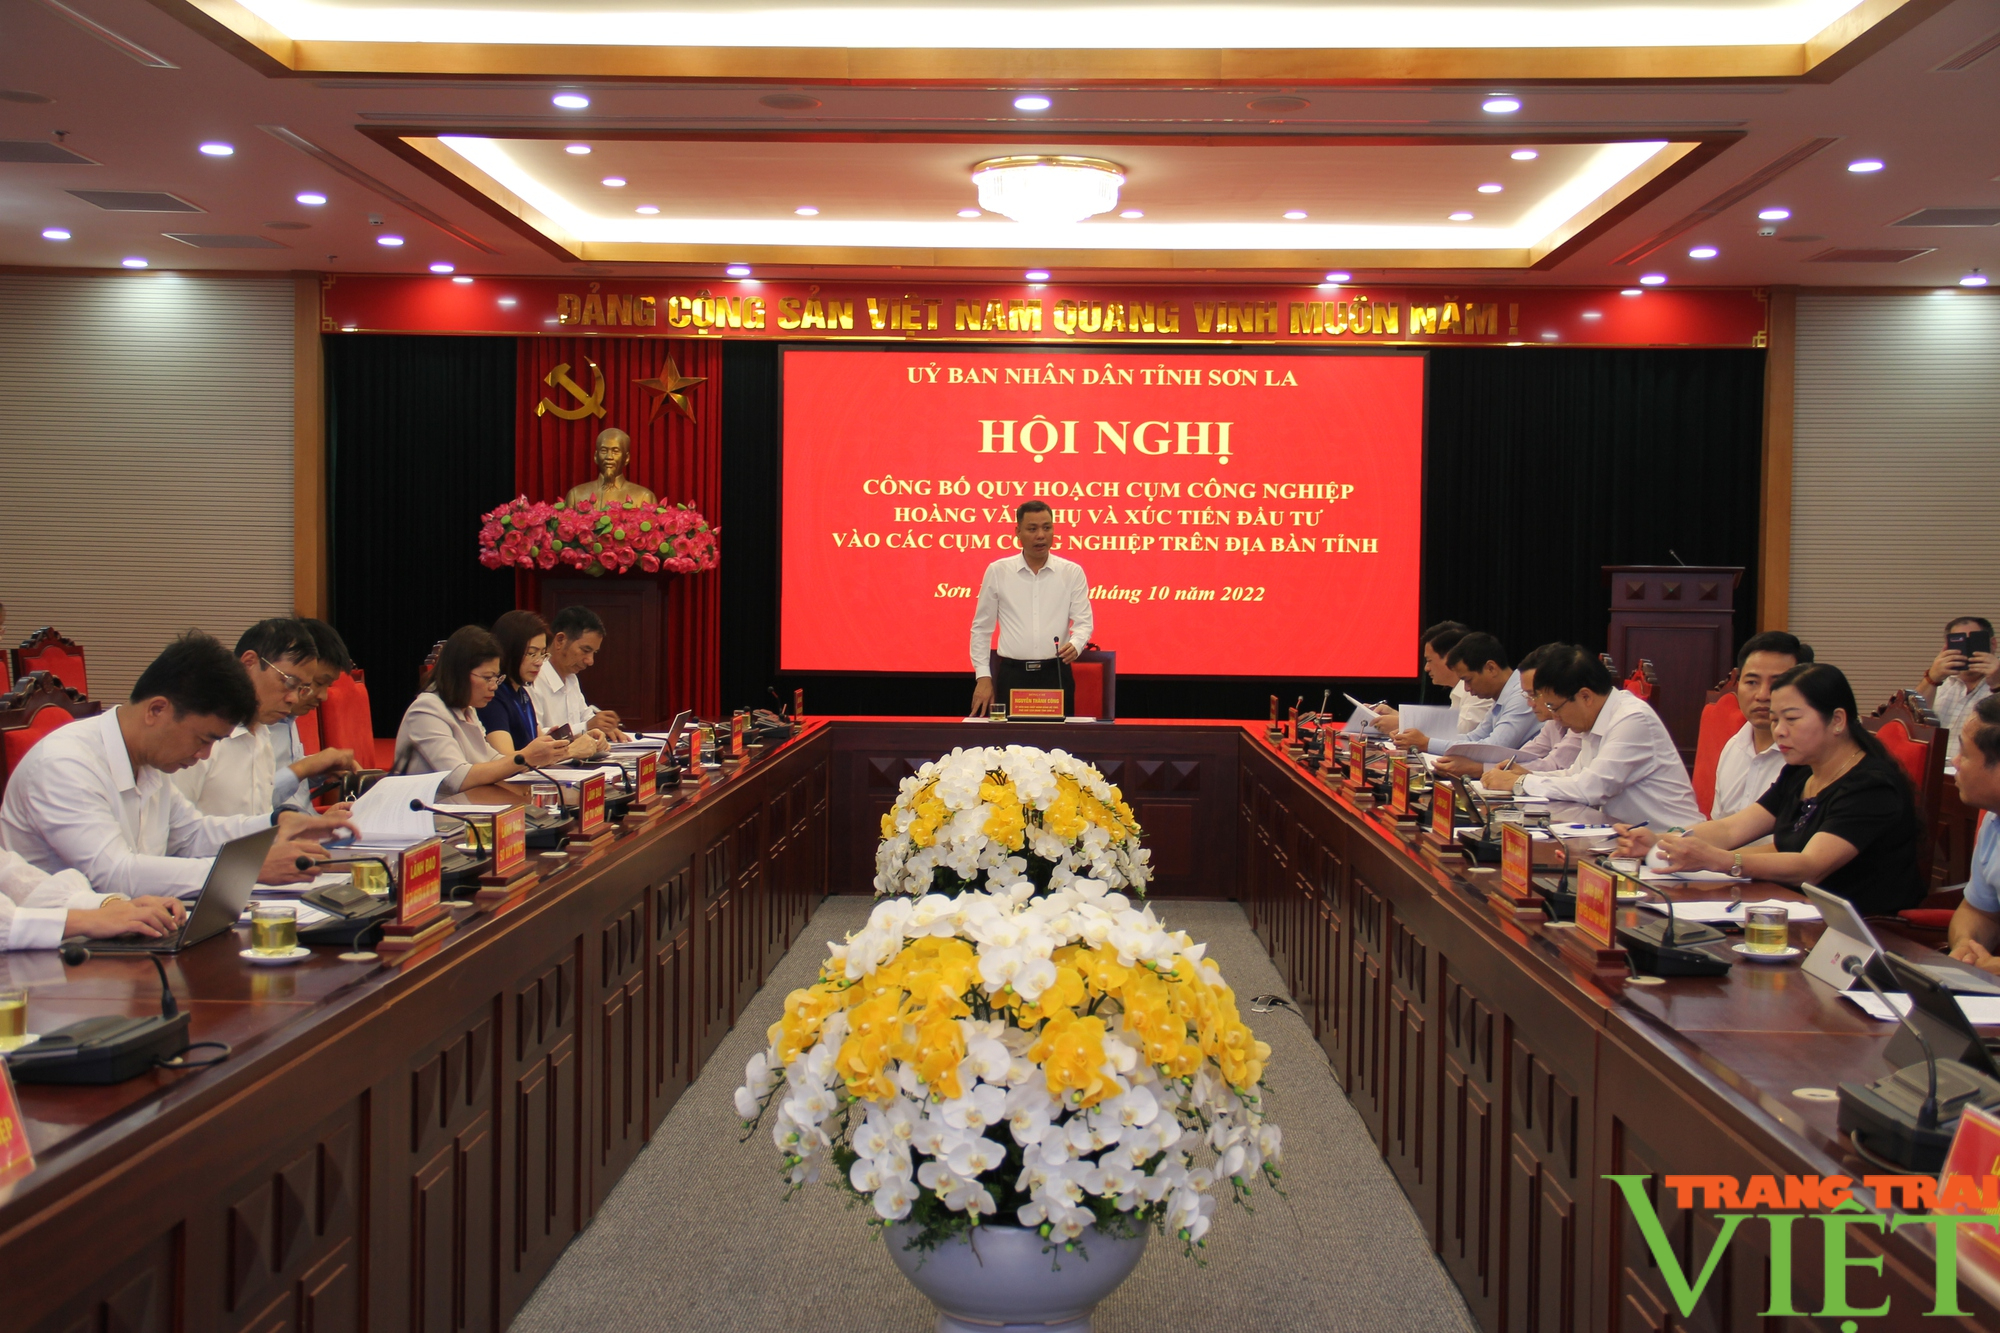 Sơn La: Công bố quy hoạch Cụm công nghiệp Hoàng Văn Thụ - Ảnh 1.